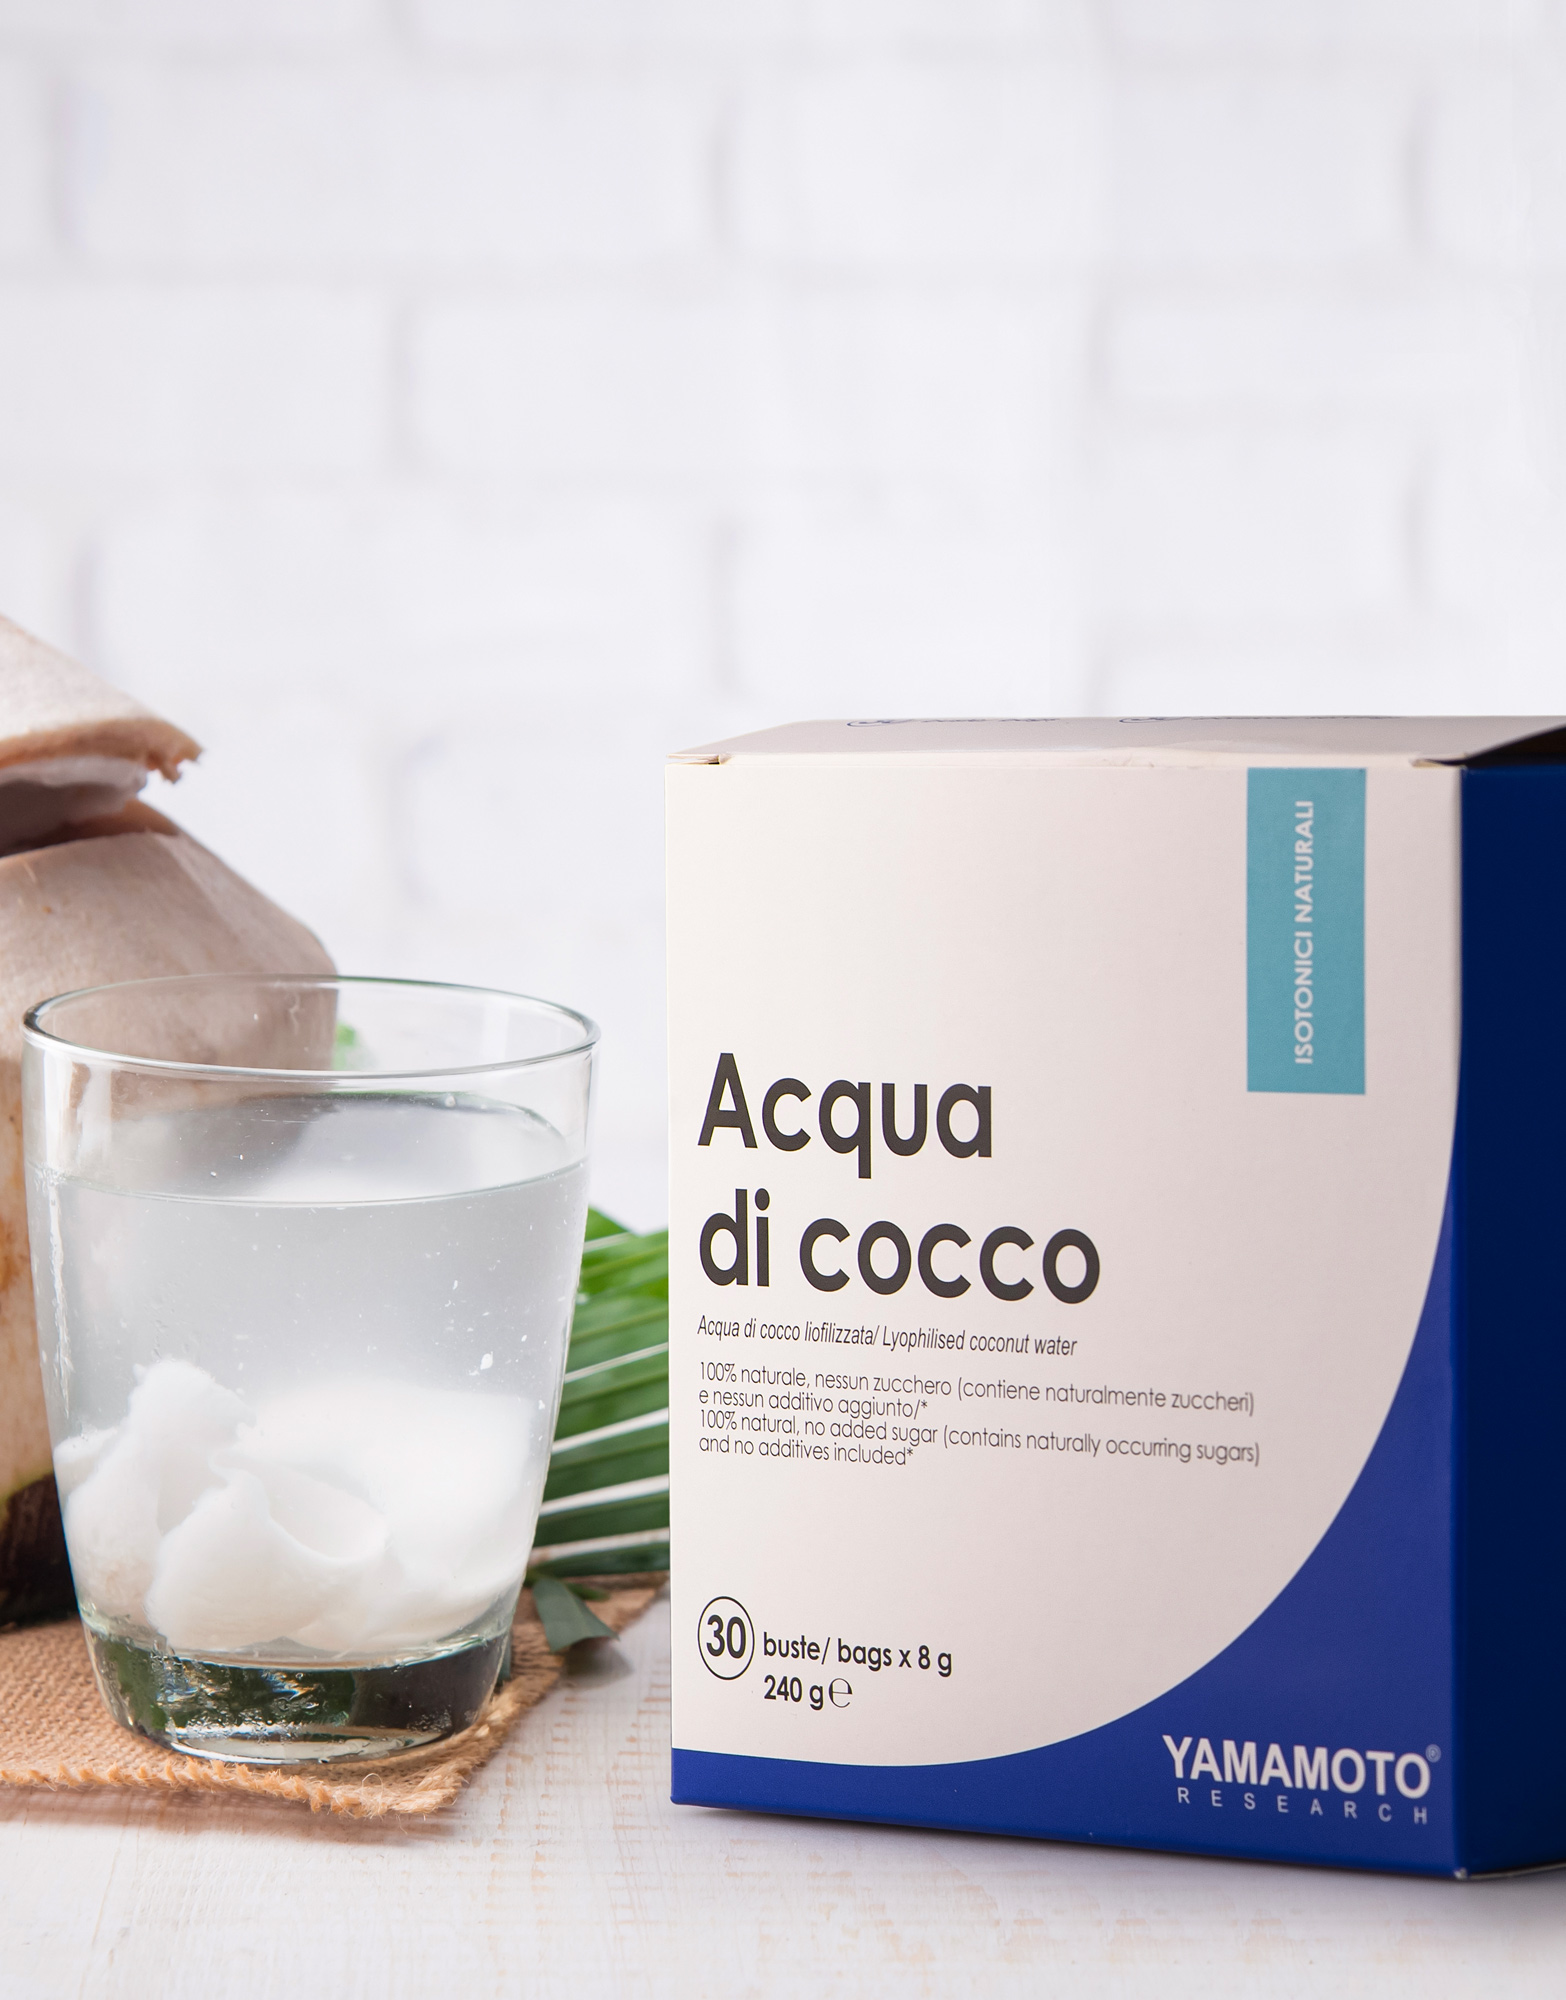 Acqua di Cocco by Yamamoto research, 30 sachets of 8 grams 